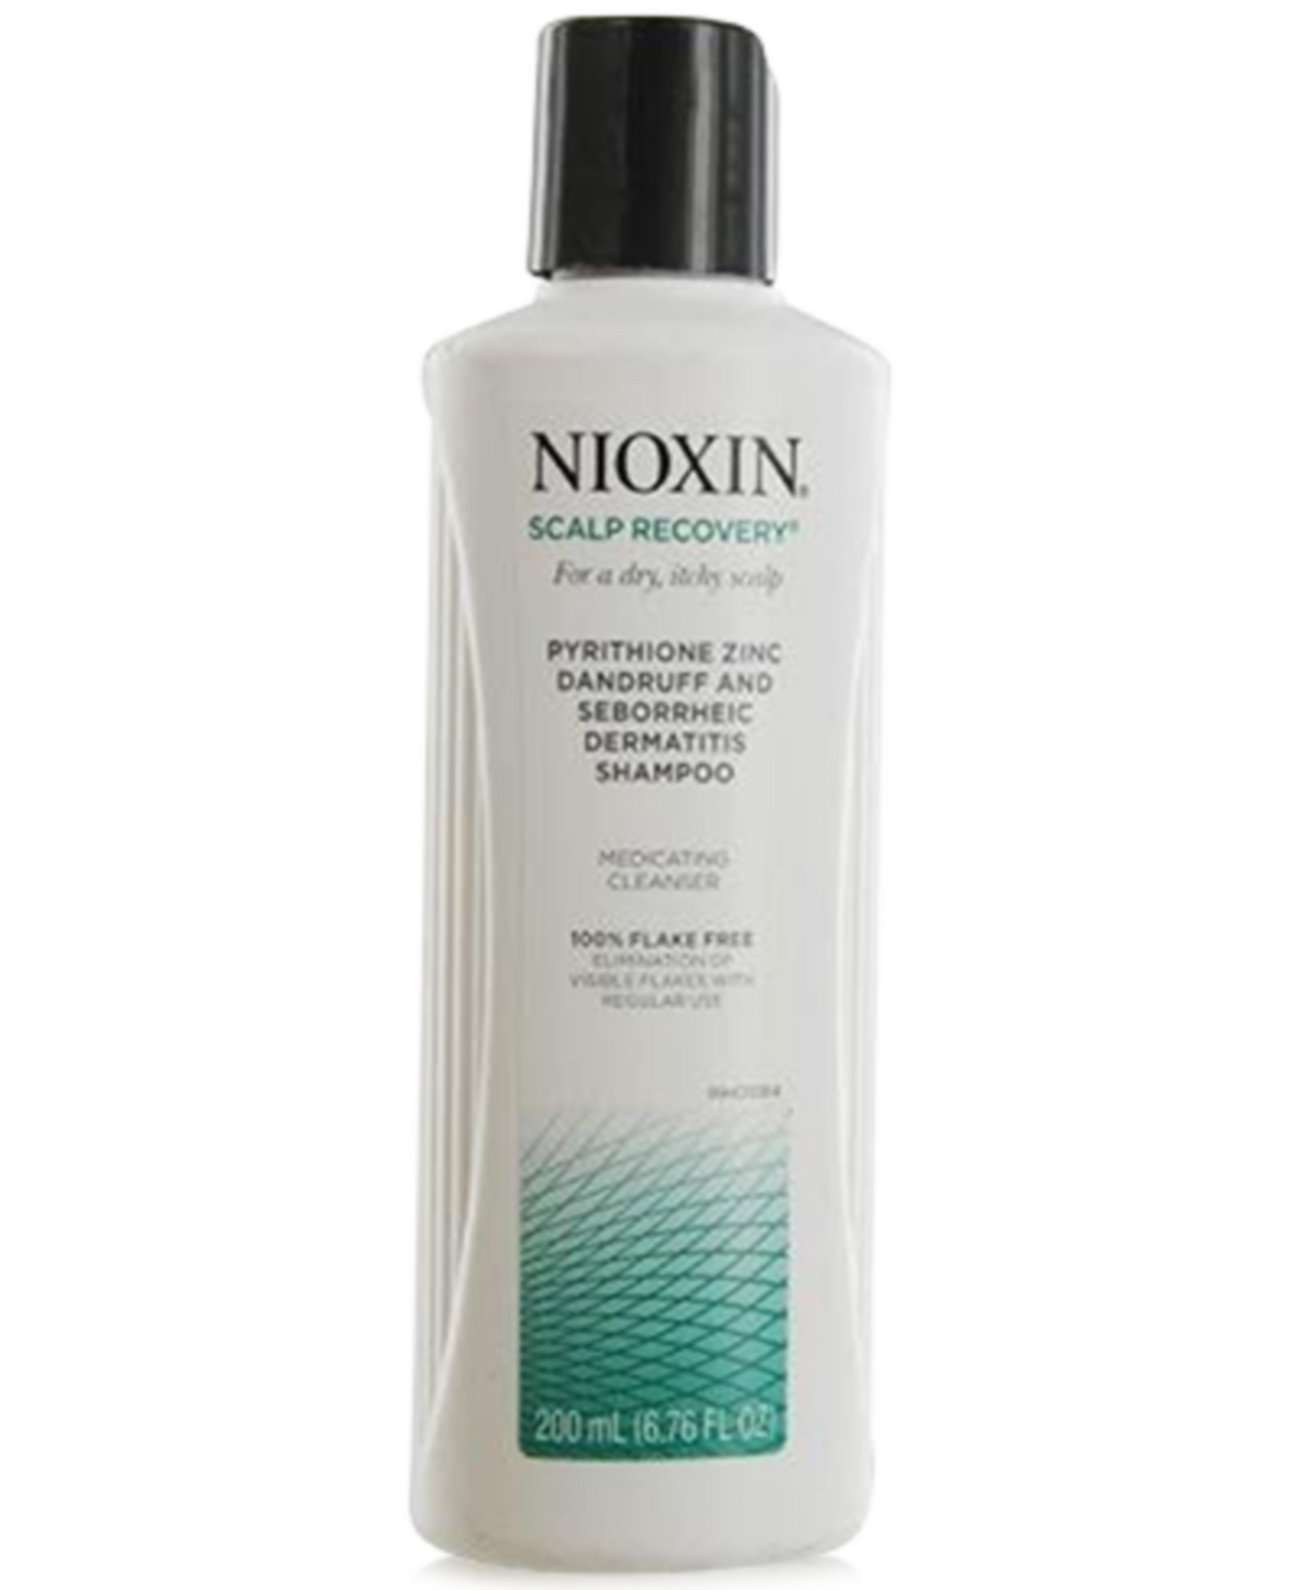 Лечебное очищающее средство для восстановления кожи головы, 200 мл, от PUREBEAUTY Salon & Spa Nioxin